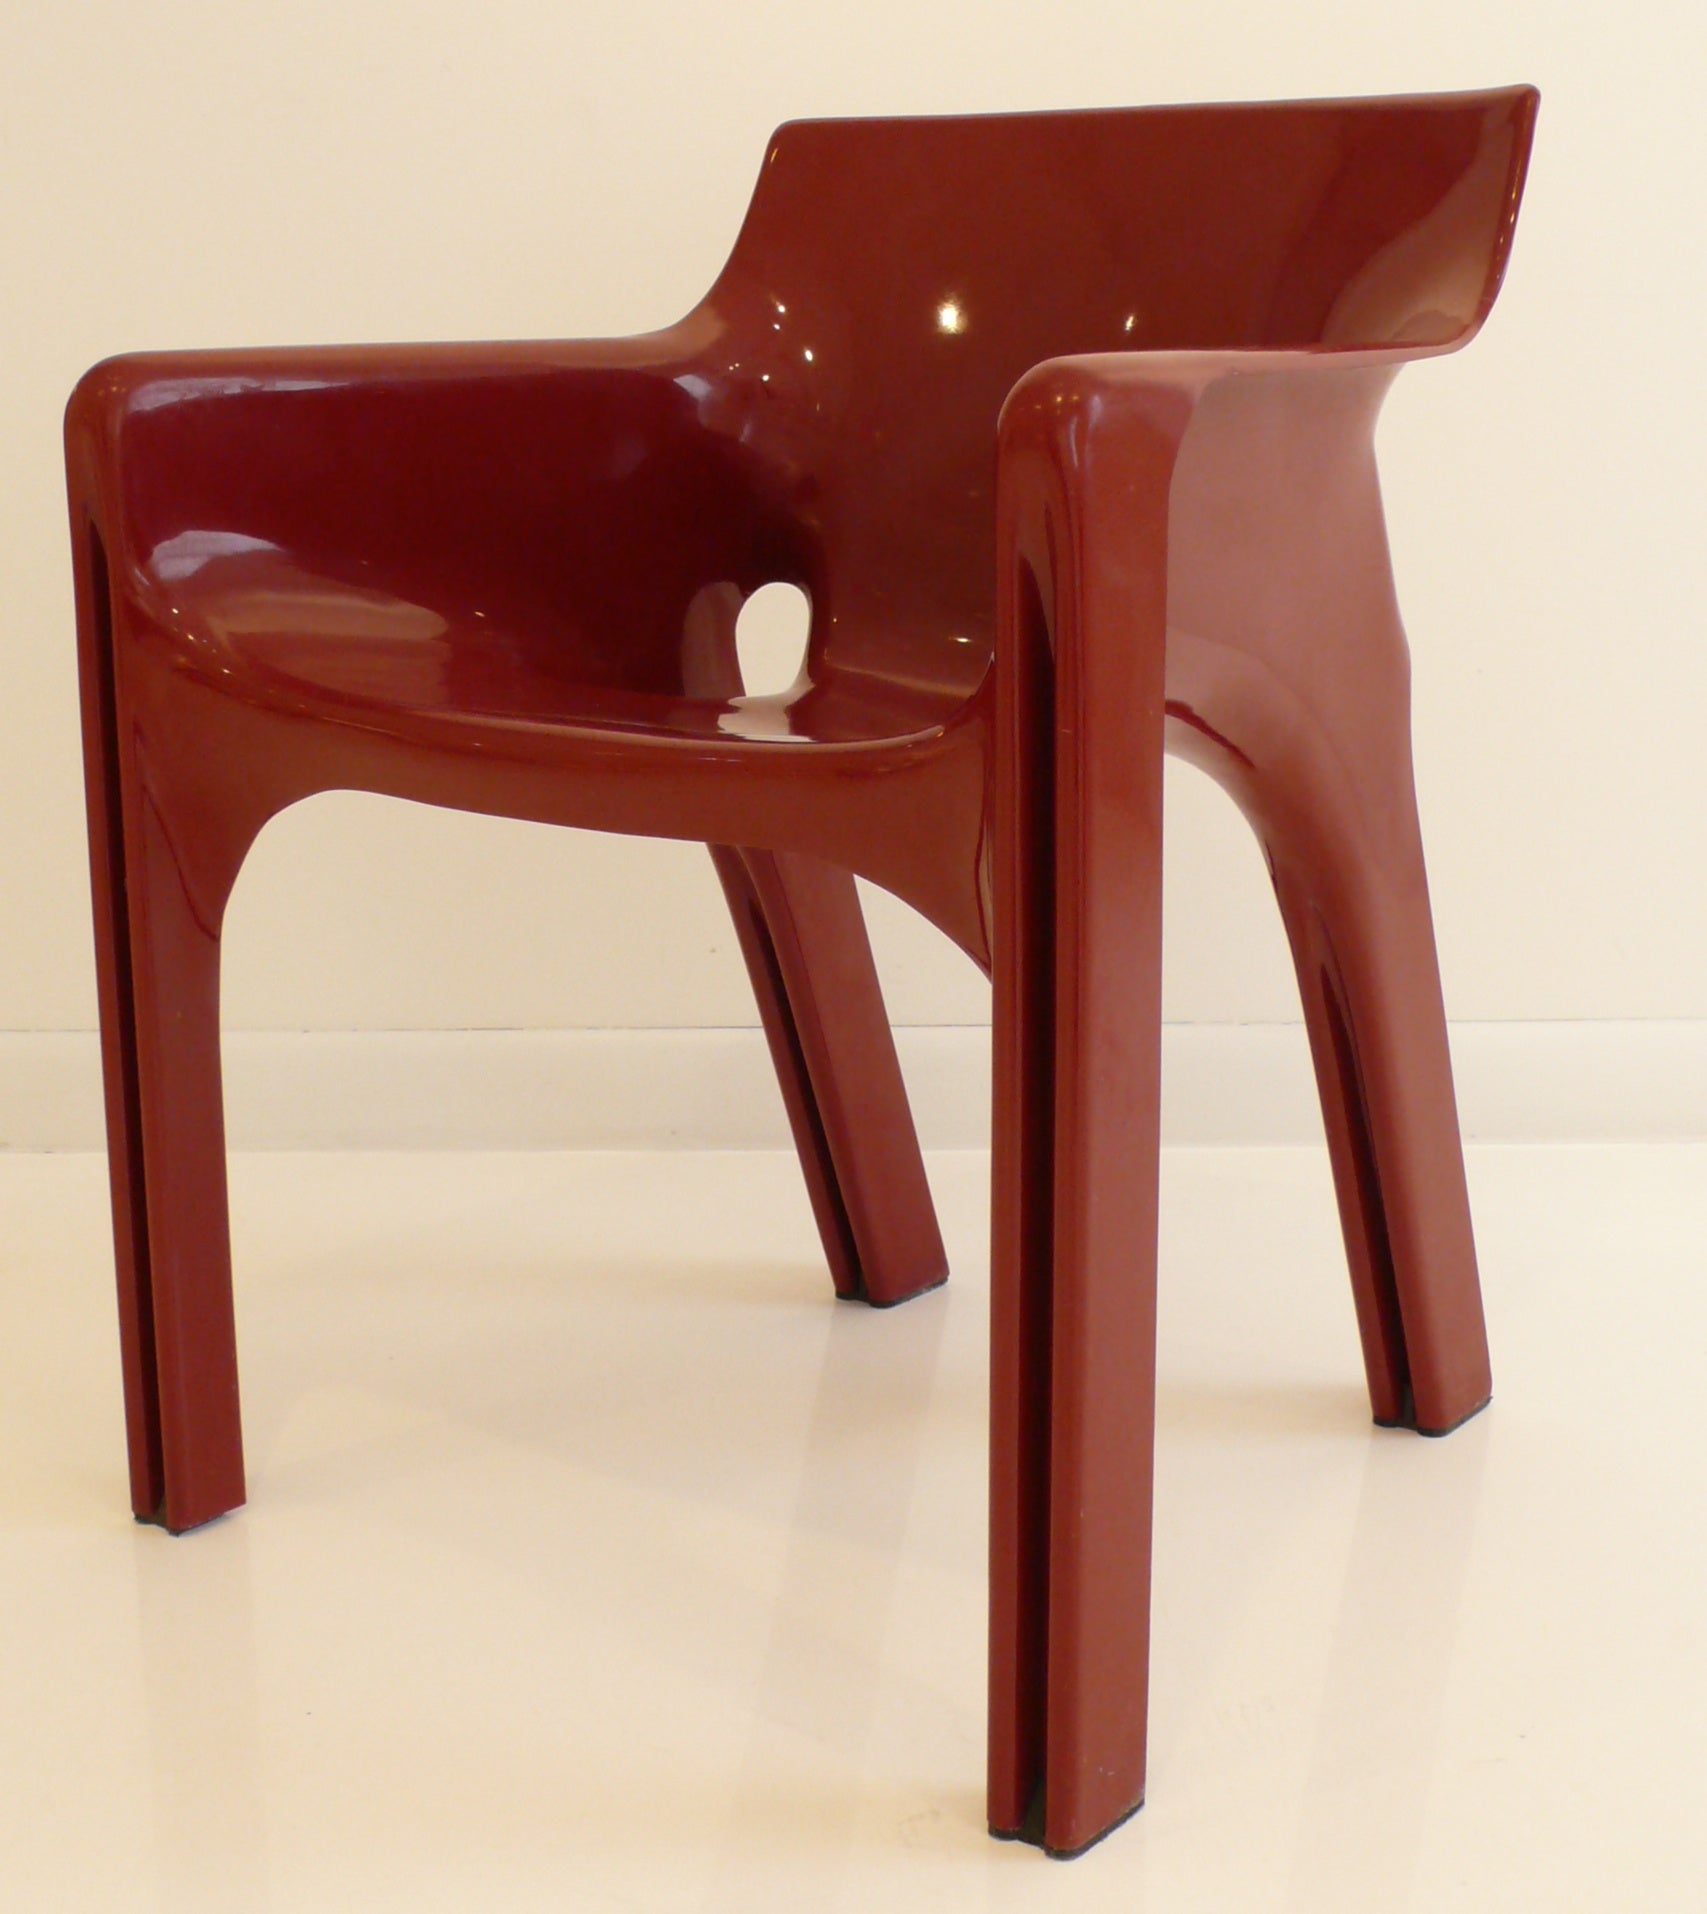 Vico Magistretti "Gaudi" Chair(s)